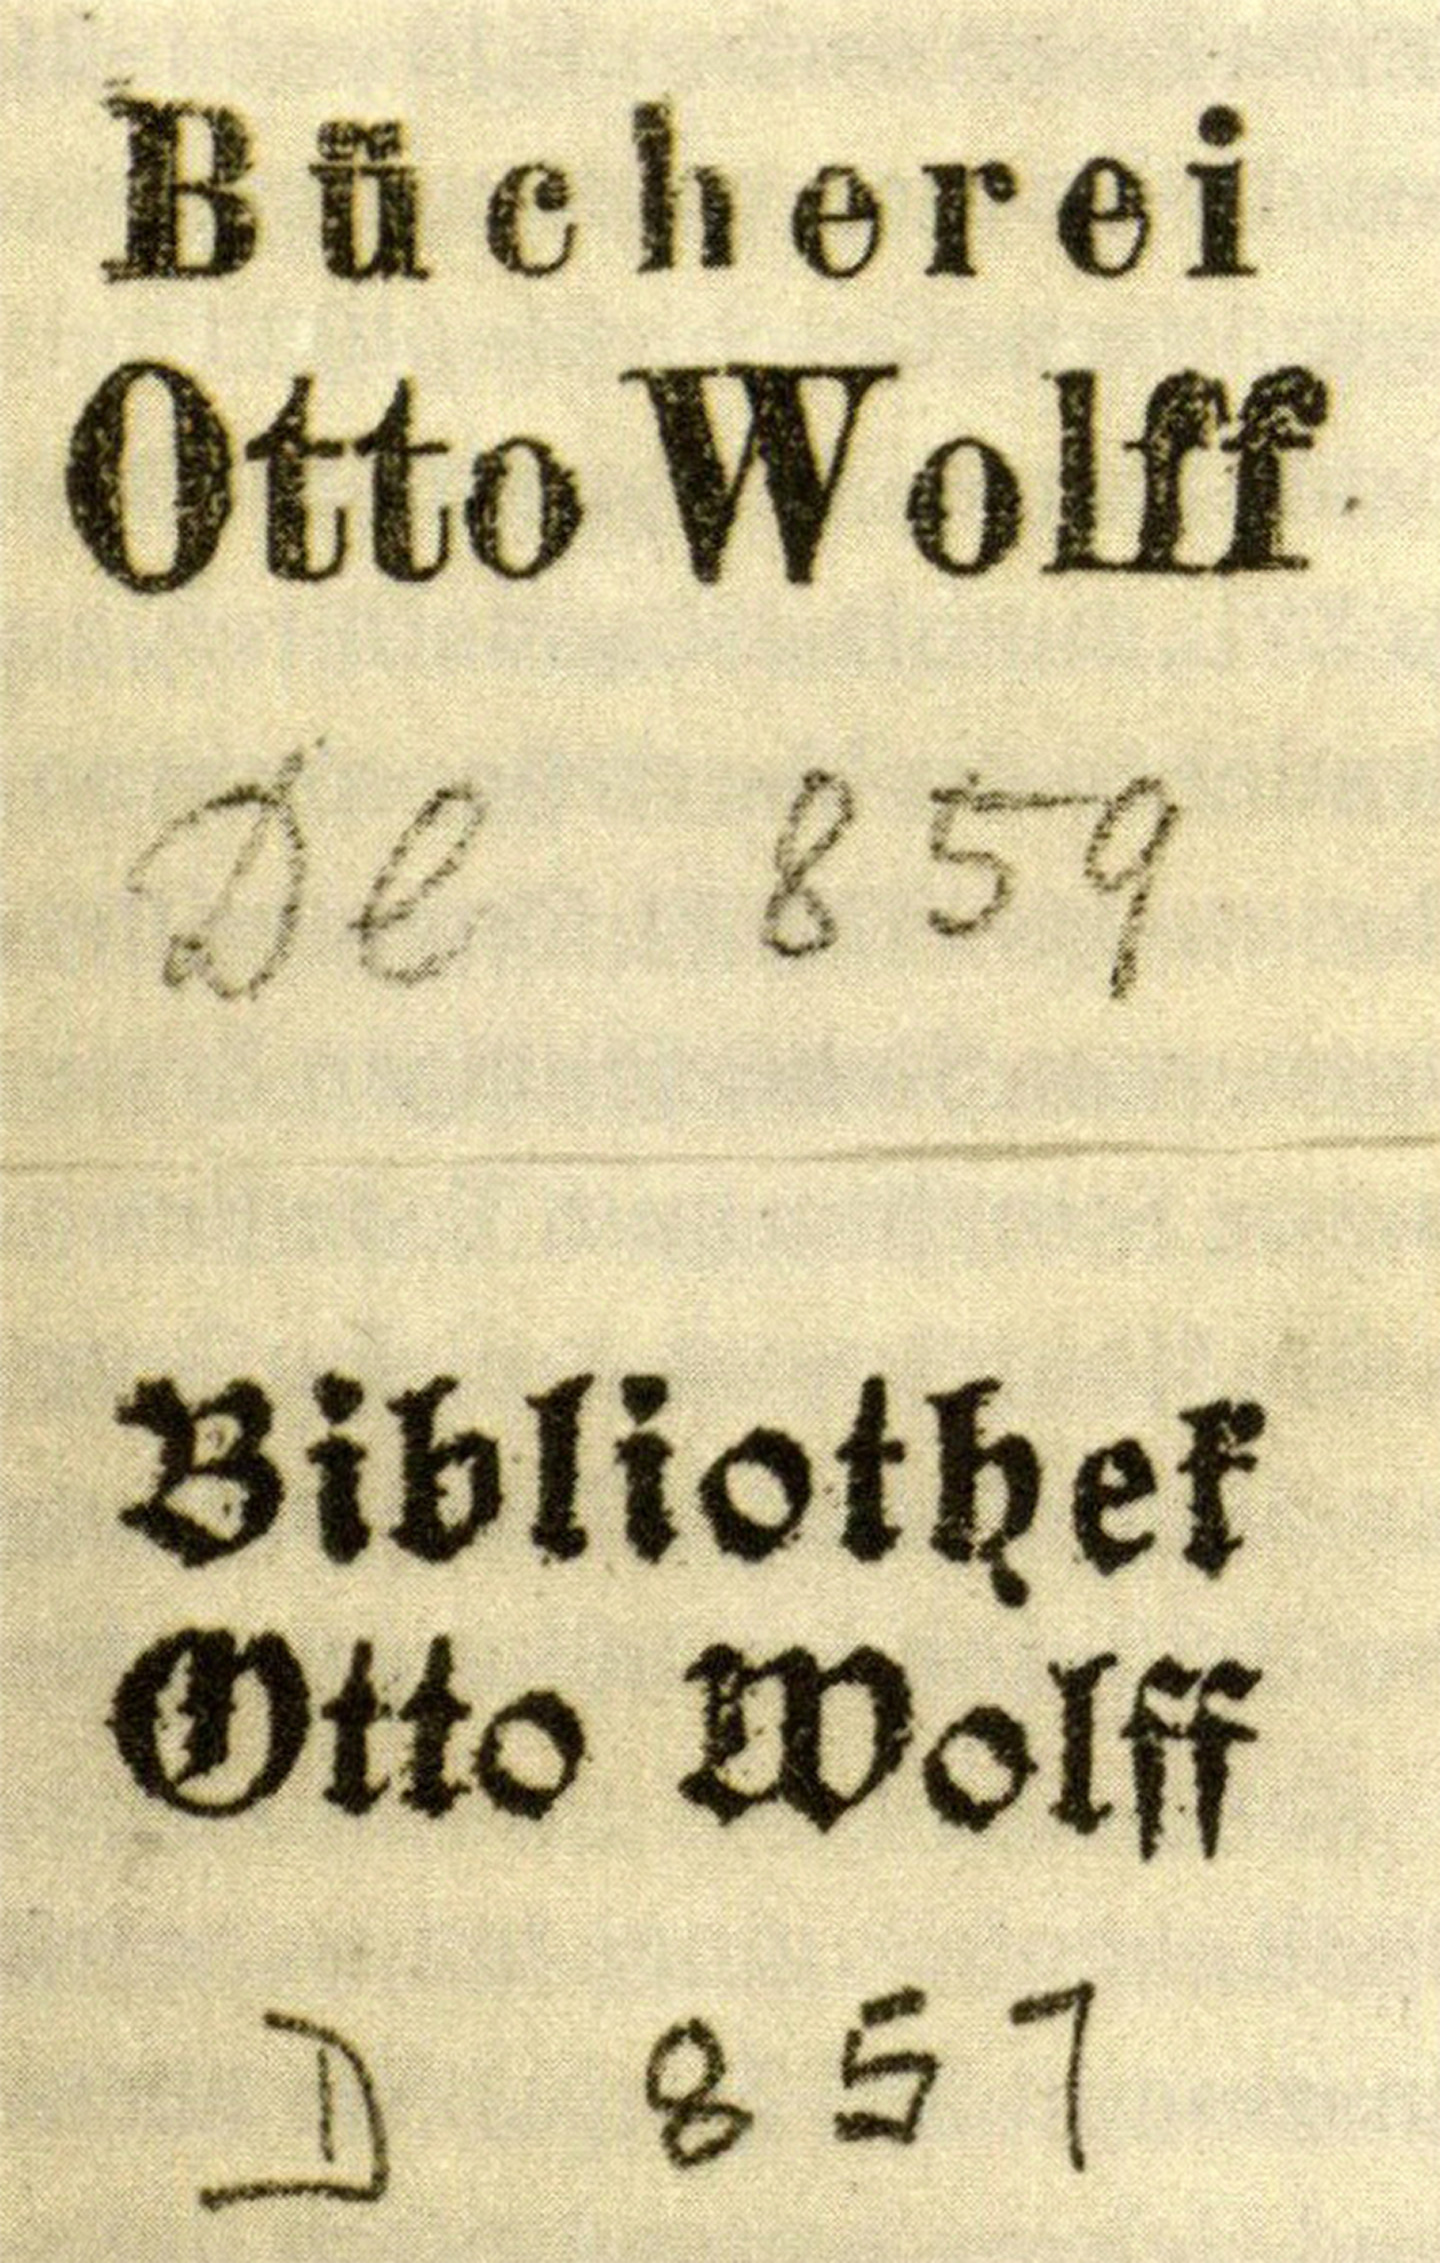 Die Exlibris von Otto Wolff trägt die Schrift "Bücherei Otto Wolff" (DE 859) - Bibliothek Otto Wolff (D 857)".